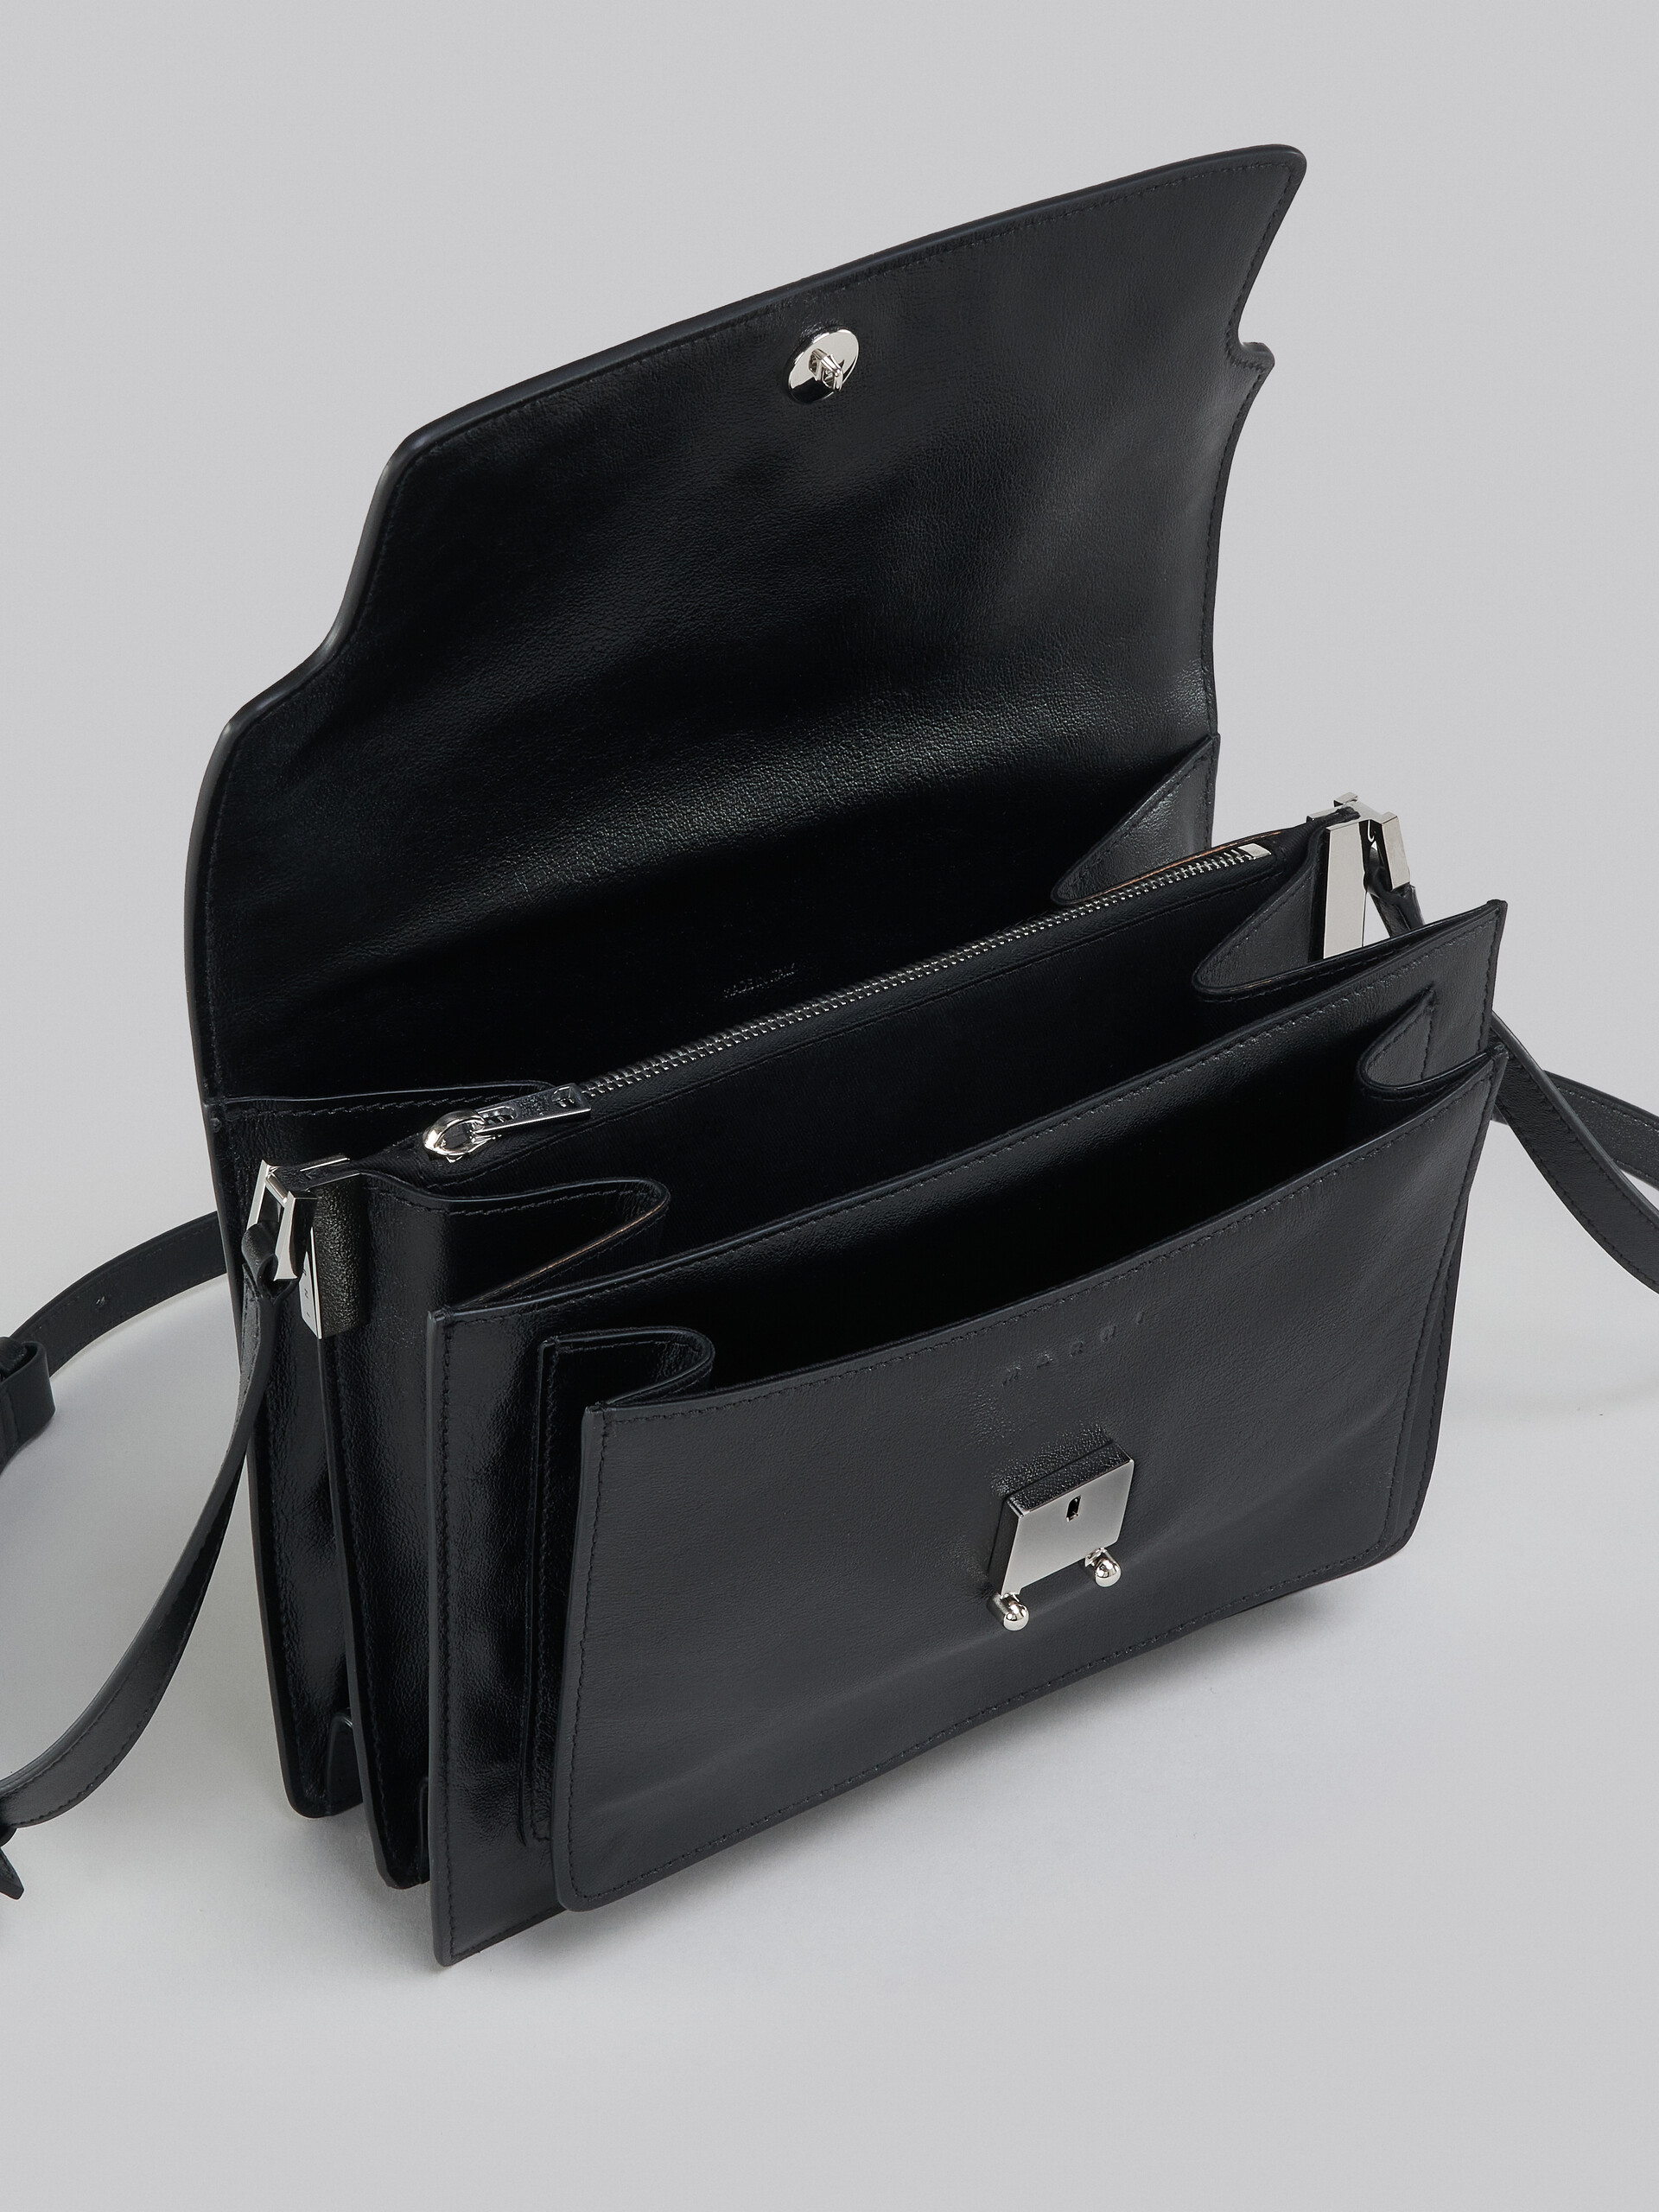 Trunk Soft Bag Grande in pelle nera - Borse a spalla - Image 4